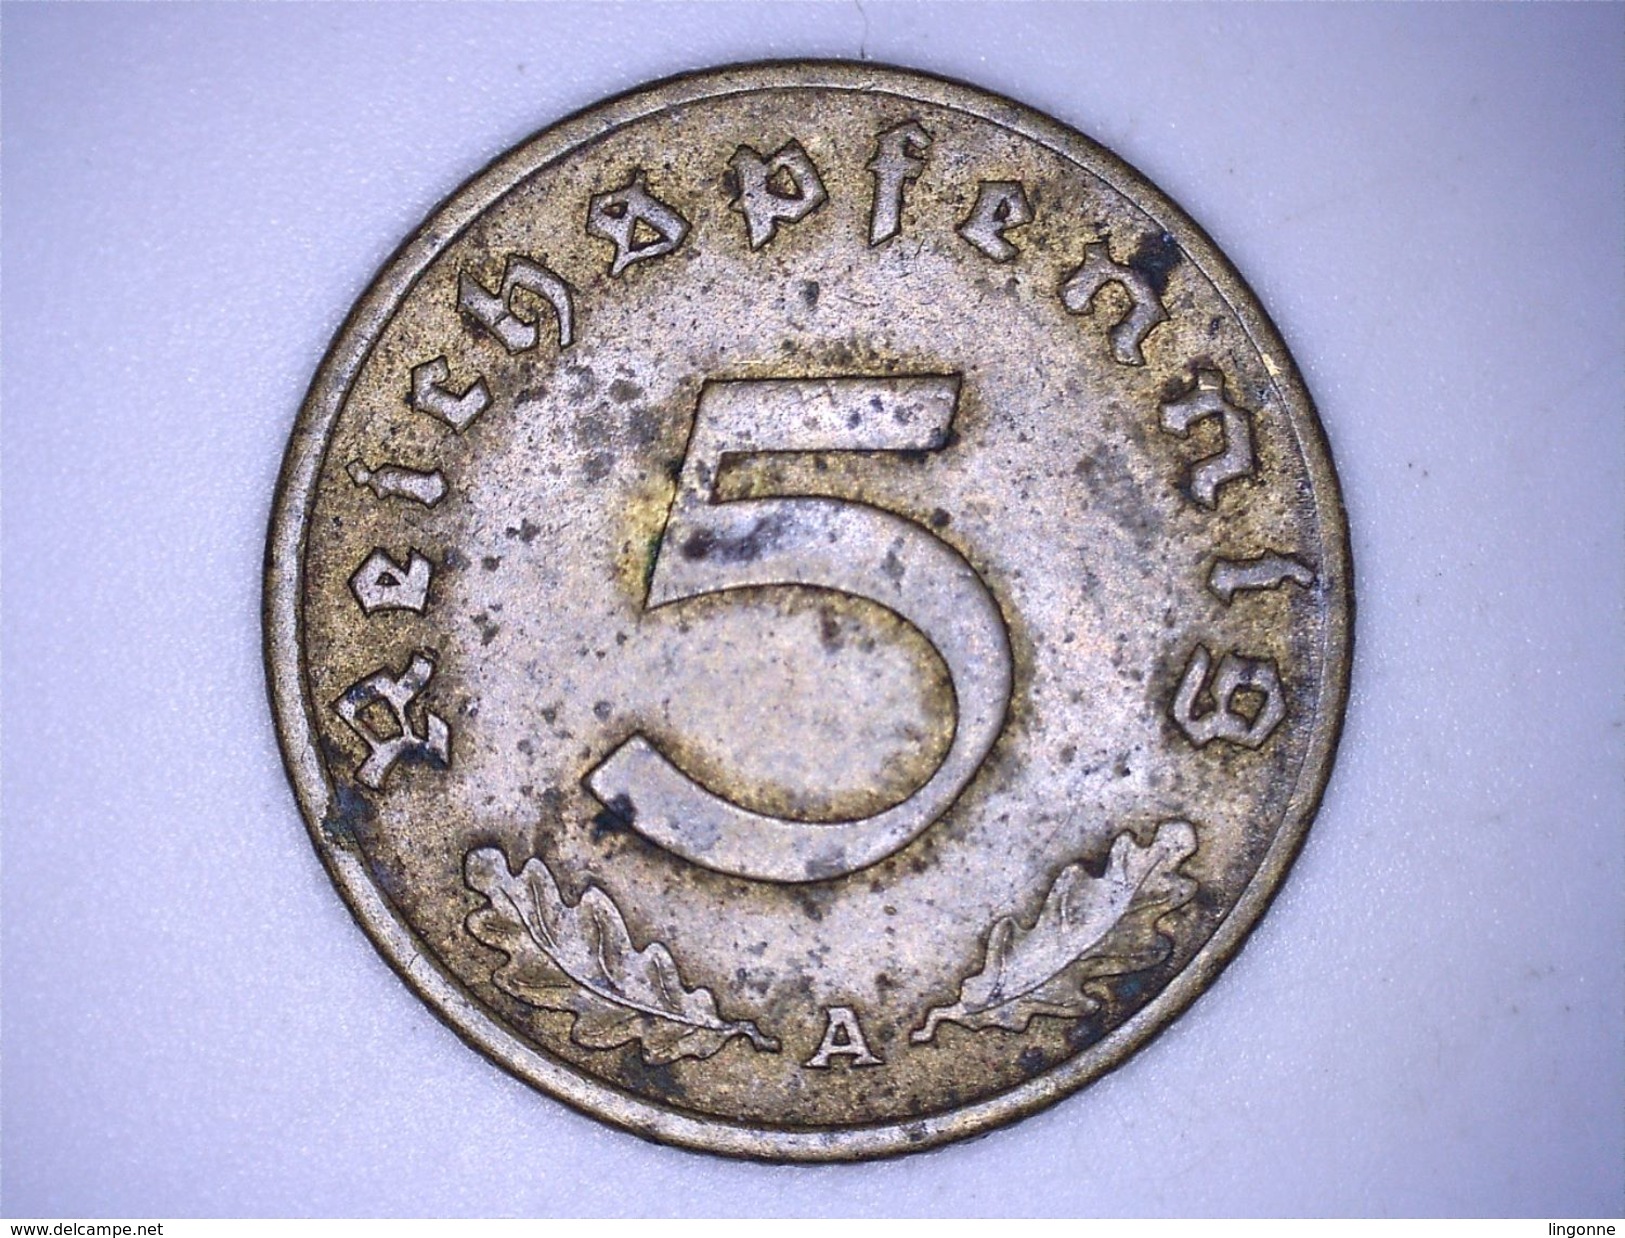 Allemagne - IIIe Reich - 5 Reichspfennig 1939 A - 5 Reichspfennig